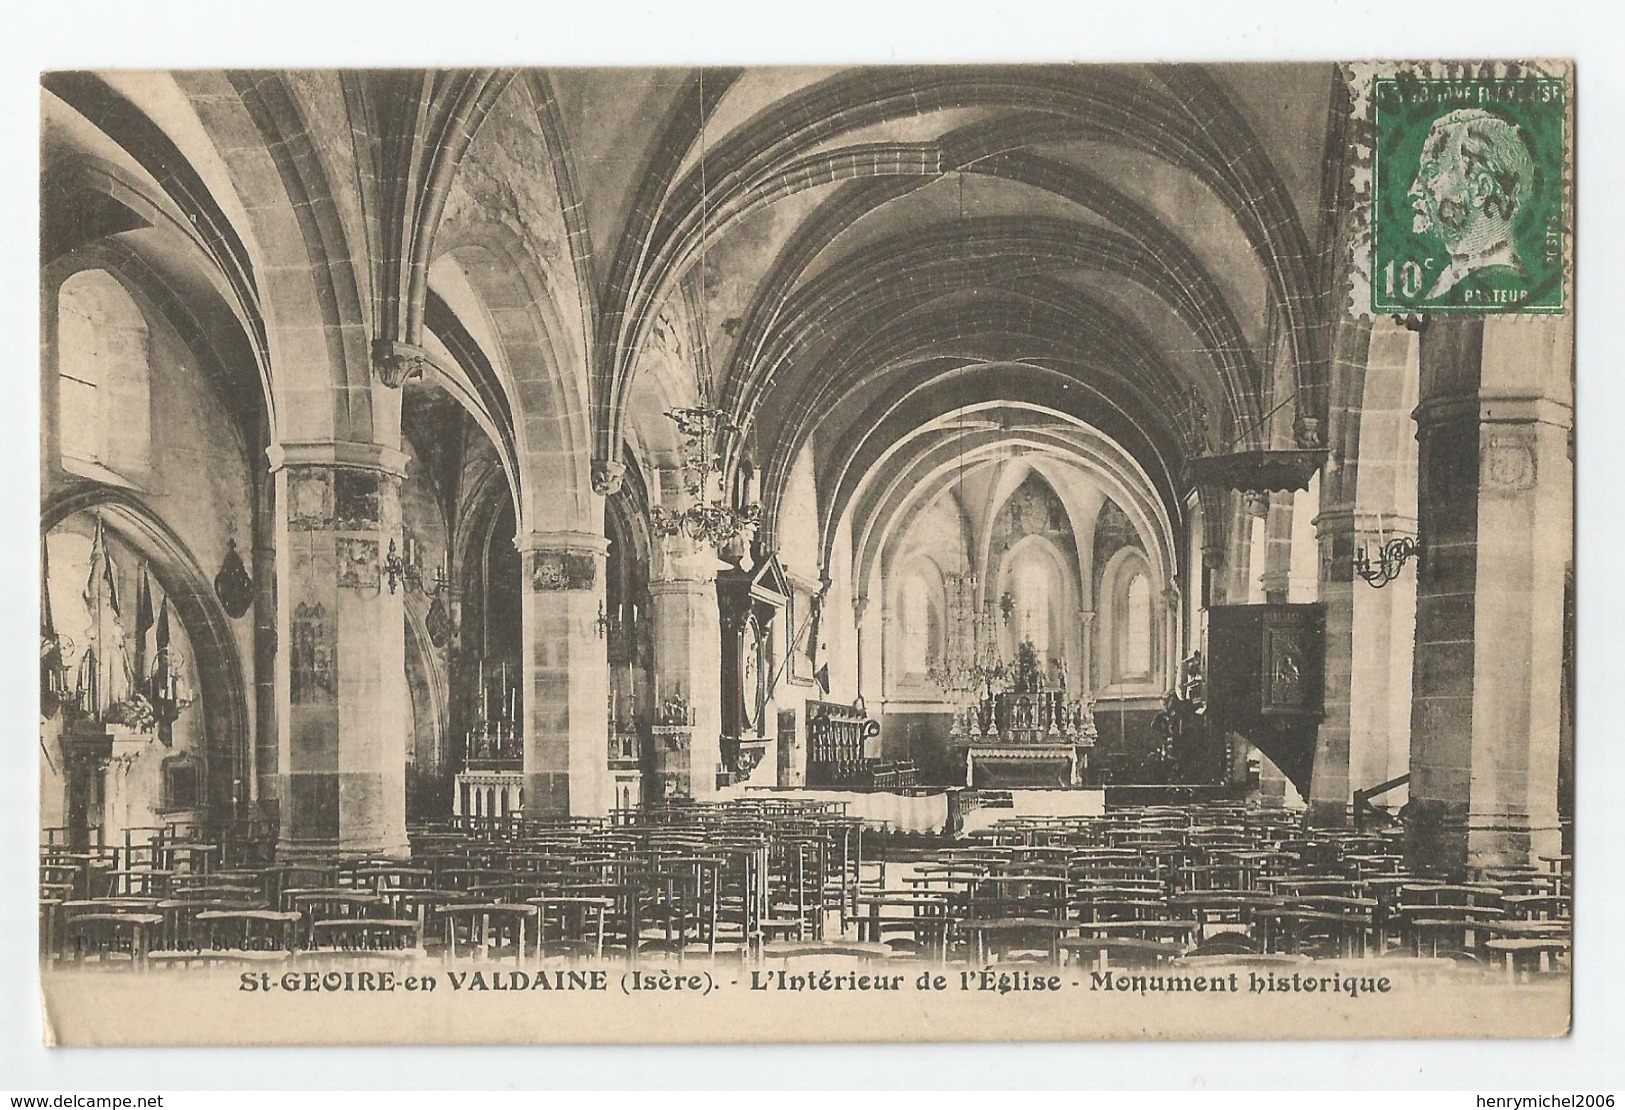 38 - Isère - St Saint Geoire En Valdaine L'intérieur De L'église 1924 - Saint-Geoire-en-Valdaine